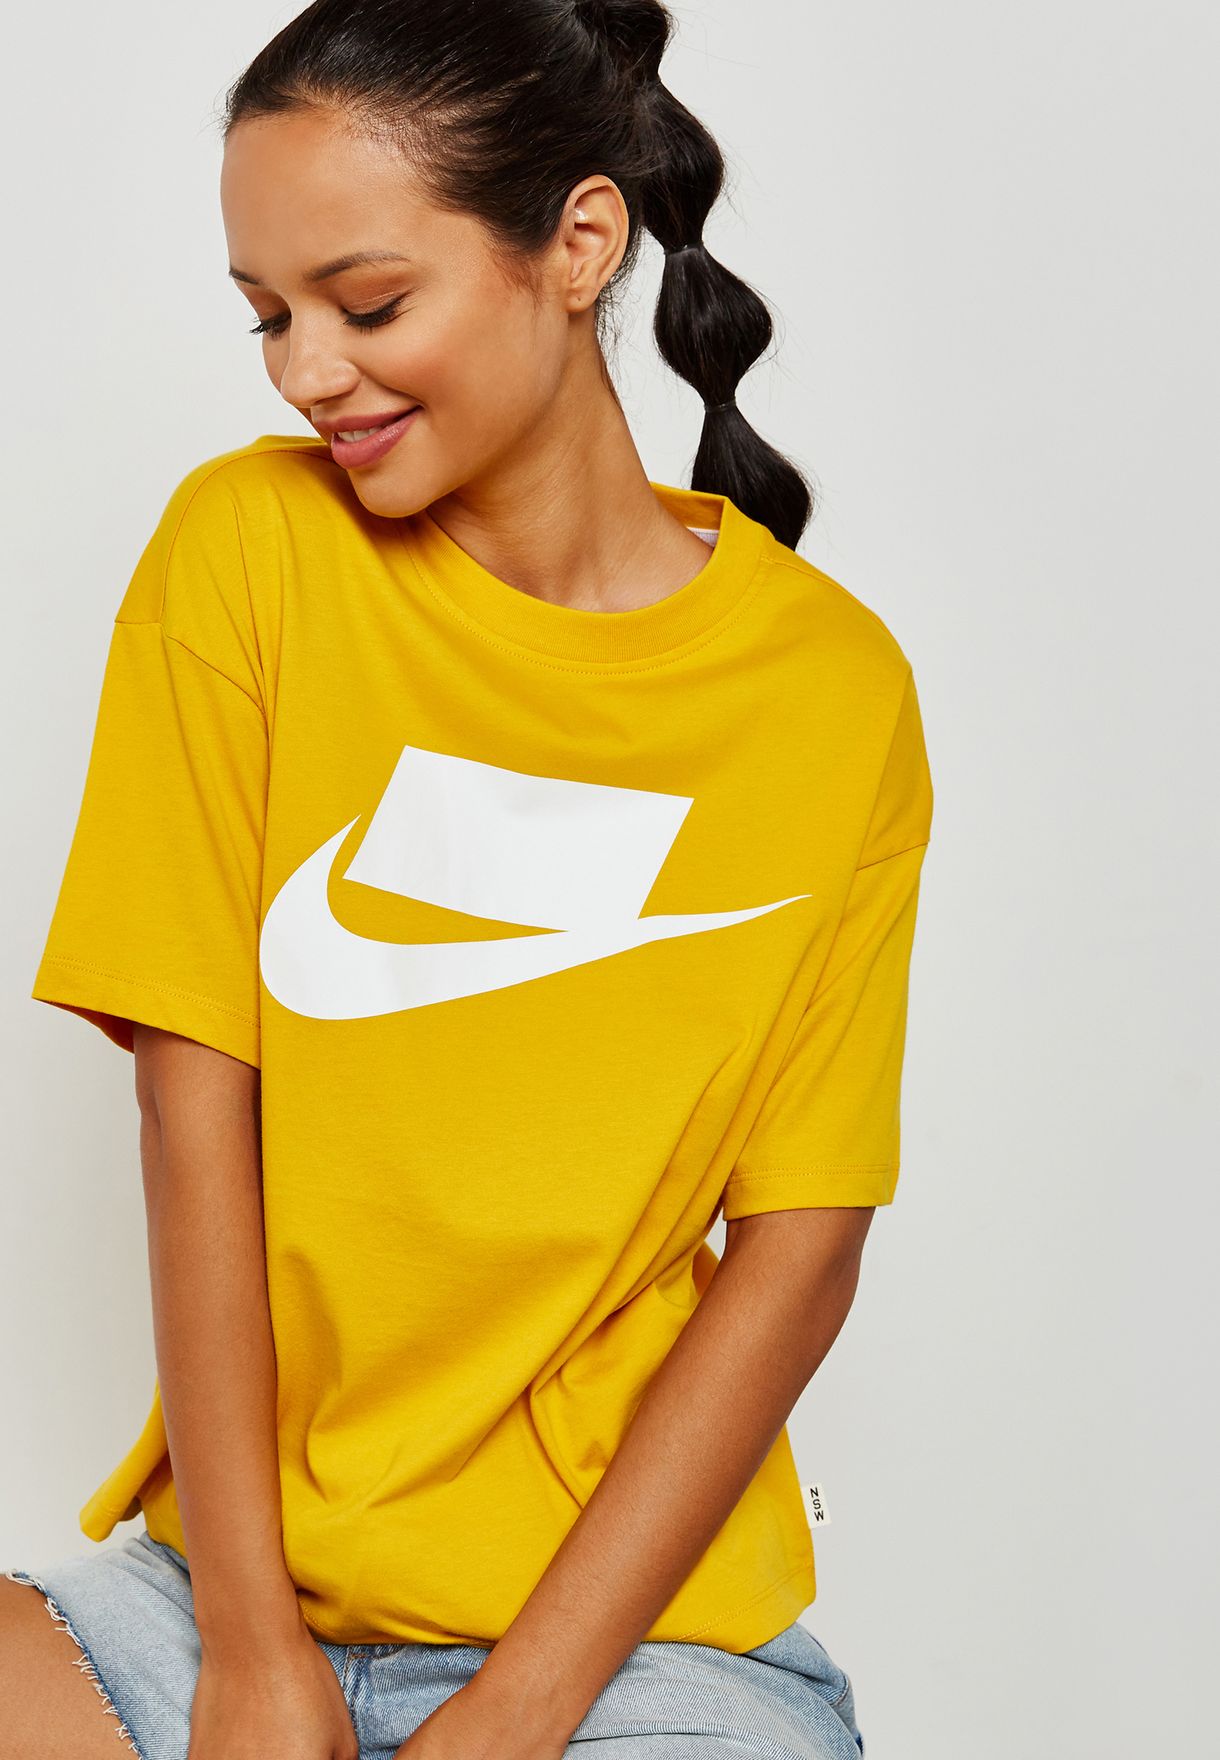 yellow nike shirt womens Shop Clothing 